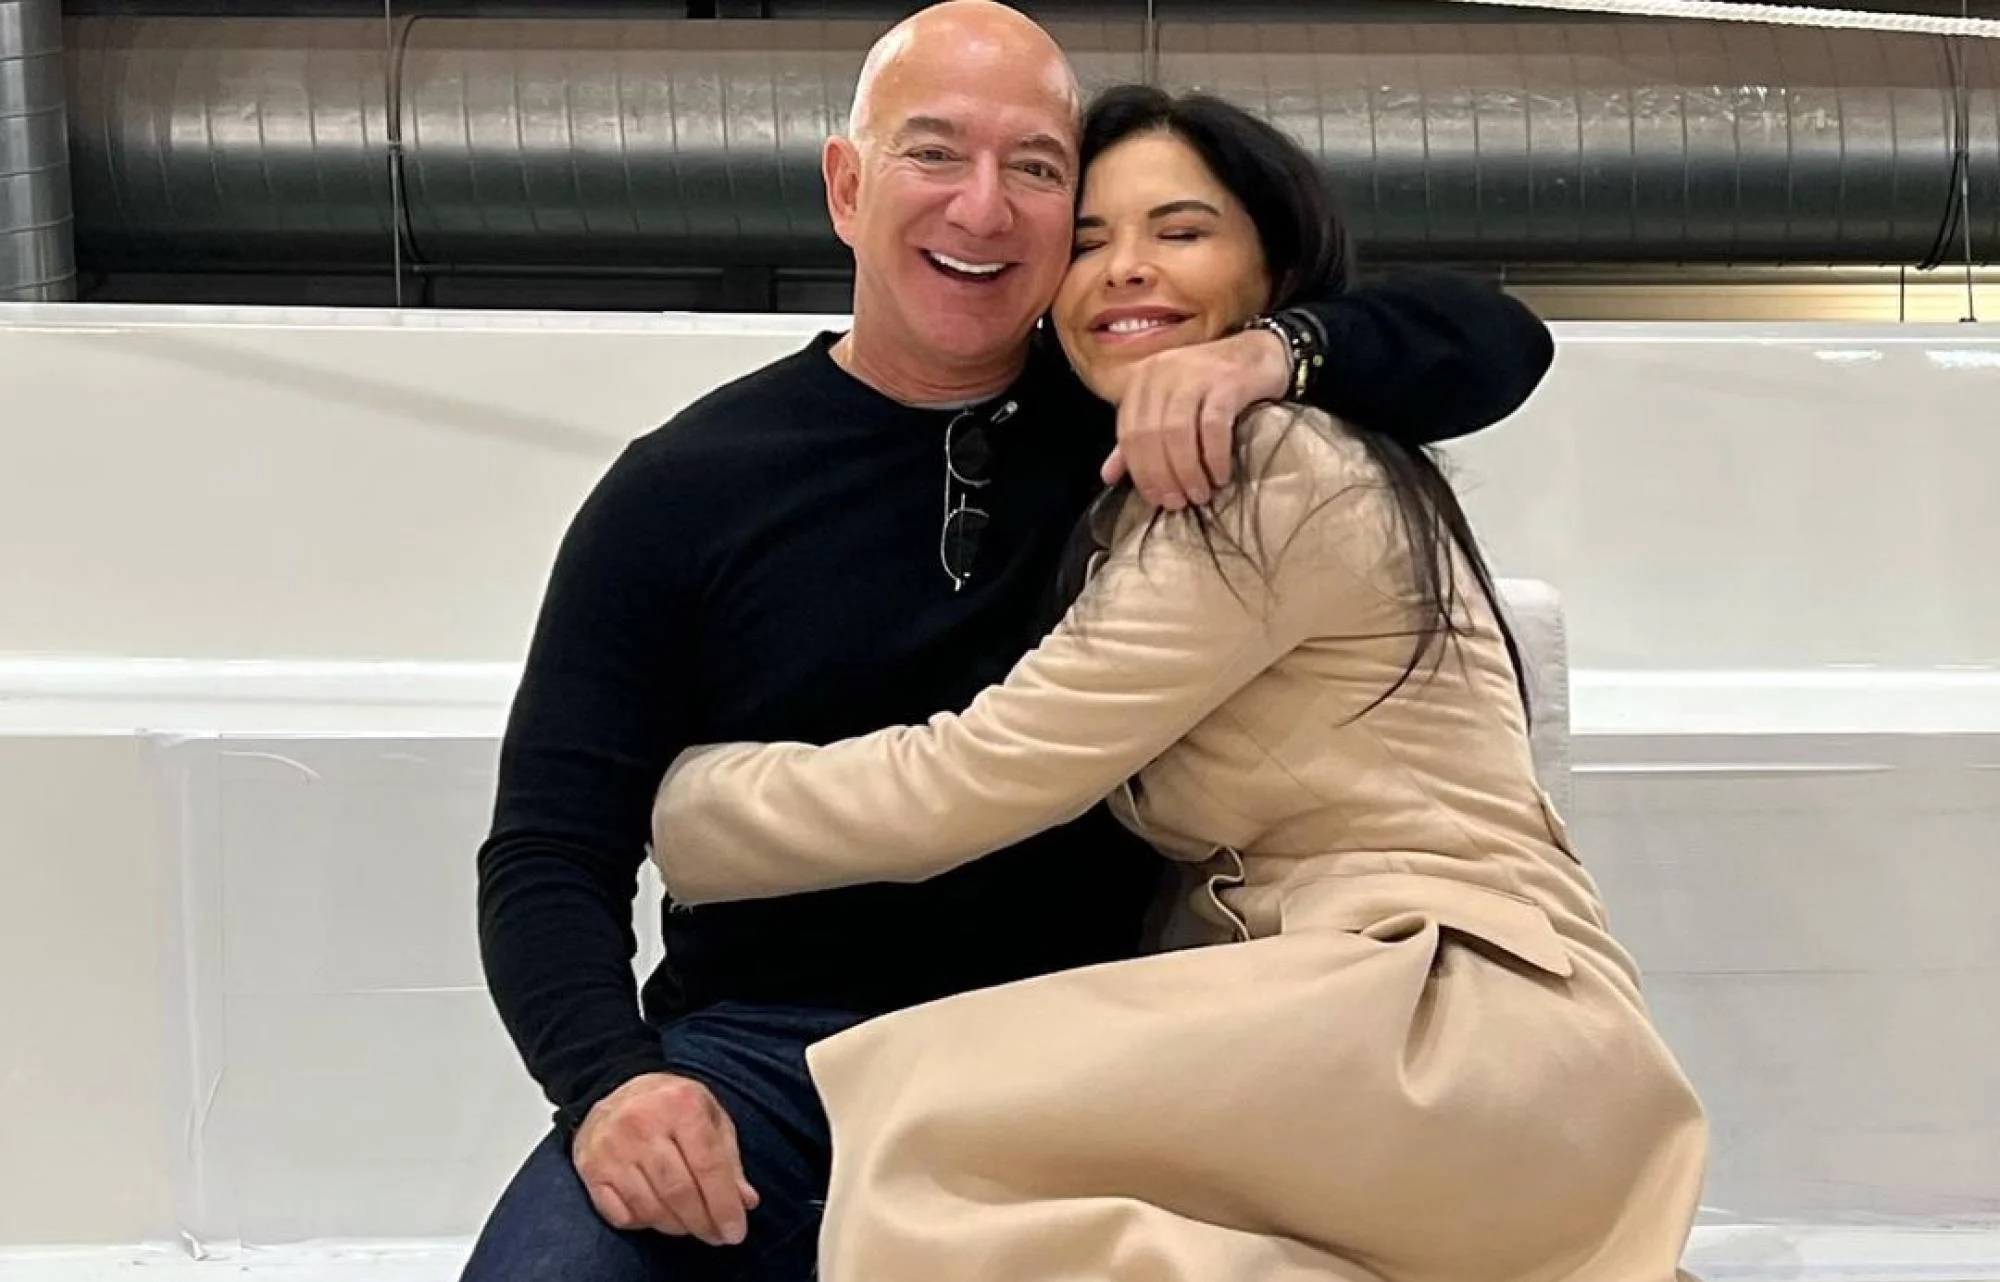 Con gái nuôi &quot;bí ẩn&quot; sẽ thừa kế ¼ tài sản của tỷ phú Jeff Bezos: “Phải” tiêu hết 1,1 tỷ đồng/tuần, sắp xuất hiện trước công chúng với vai trò mới - Ảnh 4.